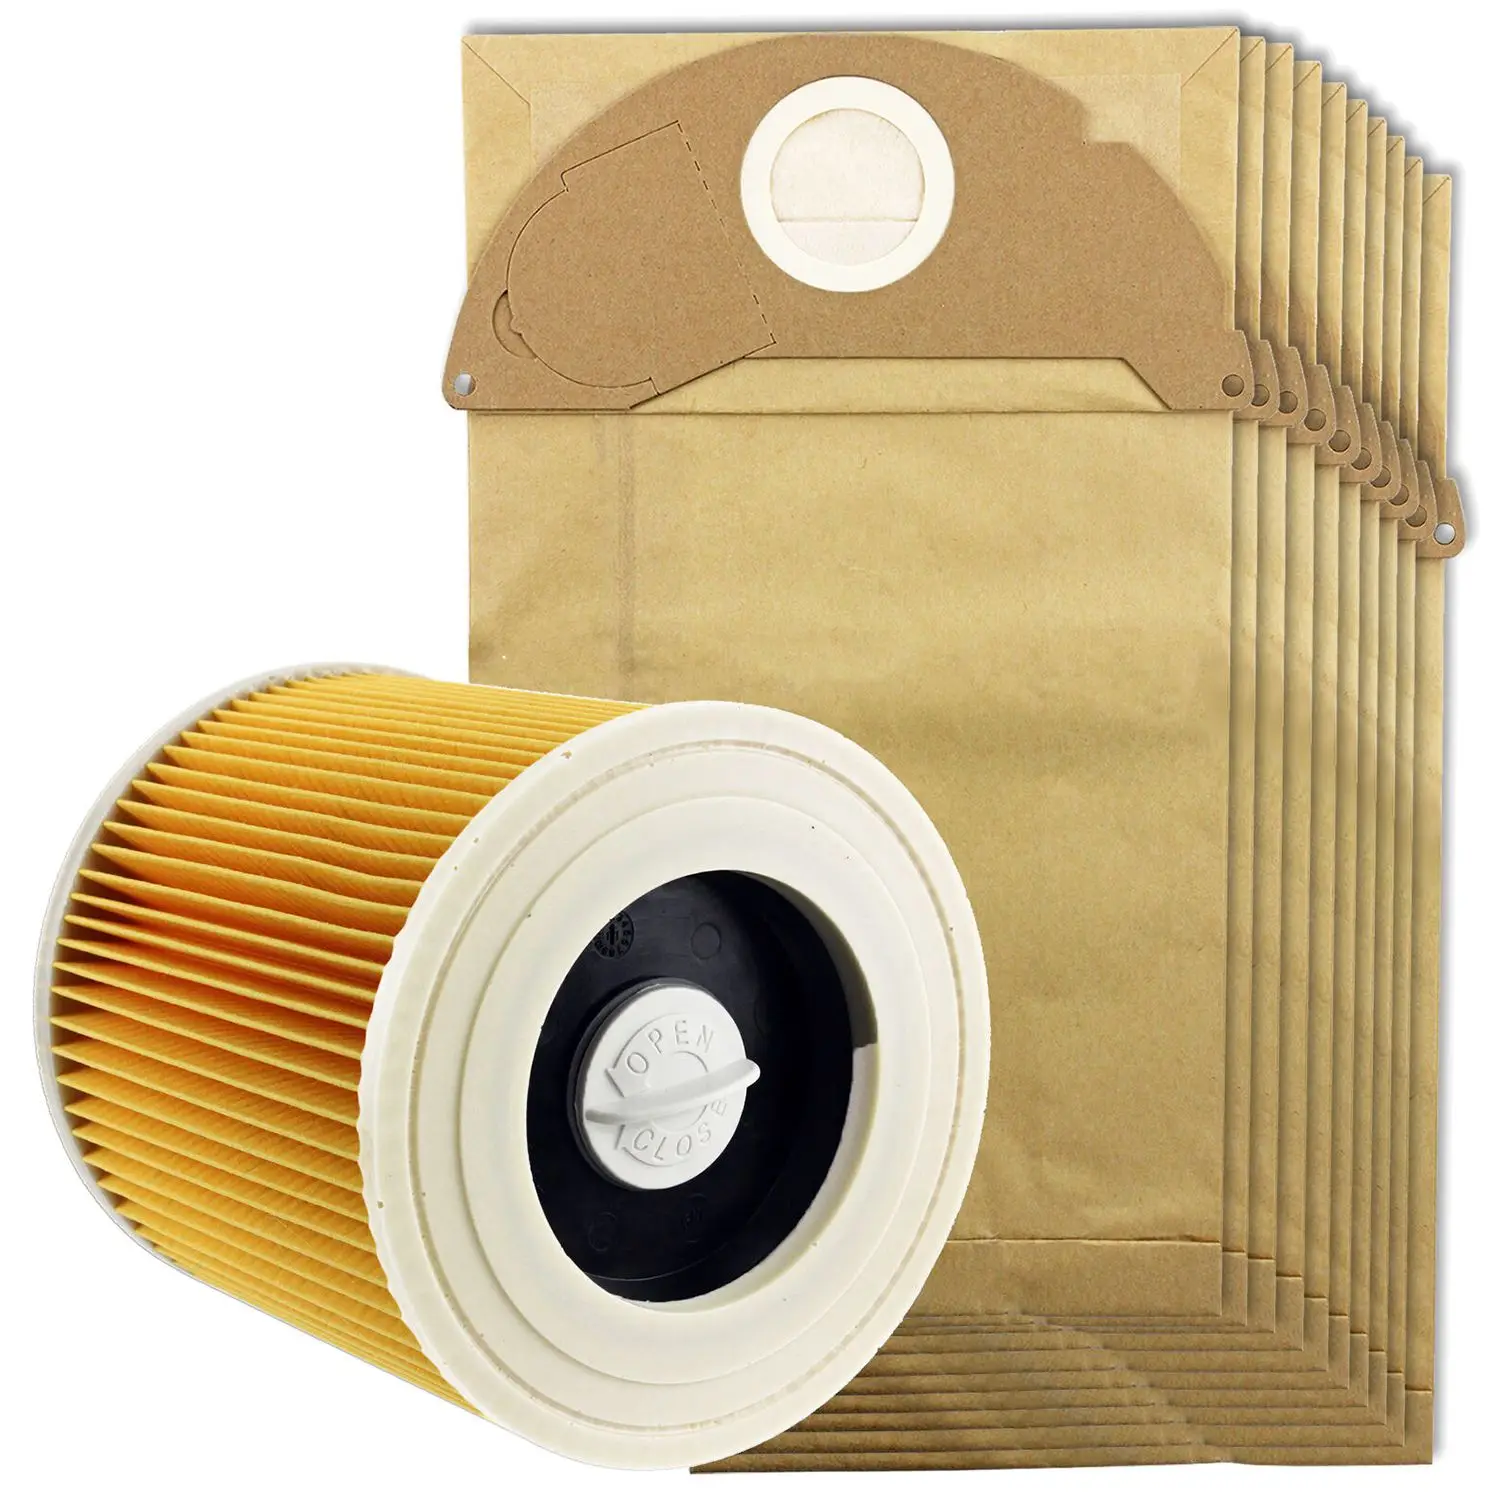 Tod-для Karcher Wet& Dry Wd2 пылесос фильтр и 10x мешки для пыли - Цвет: Yellow